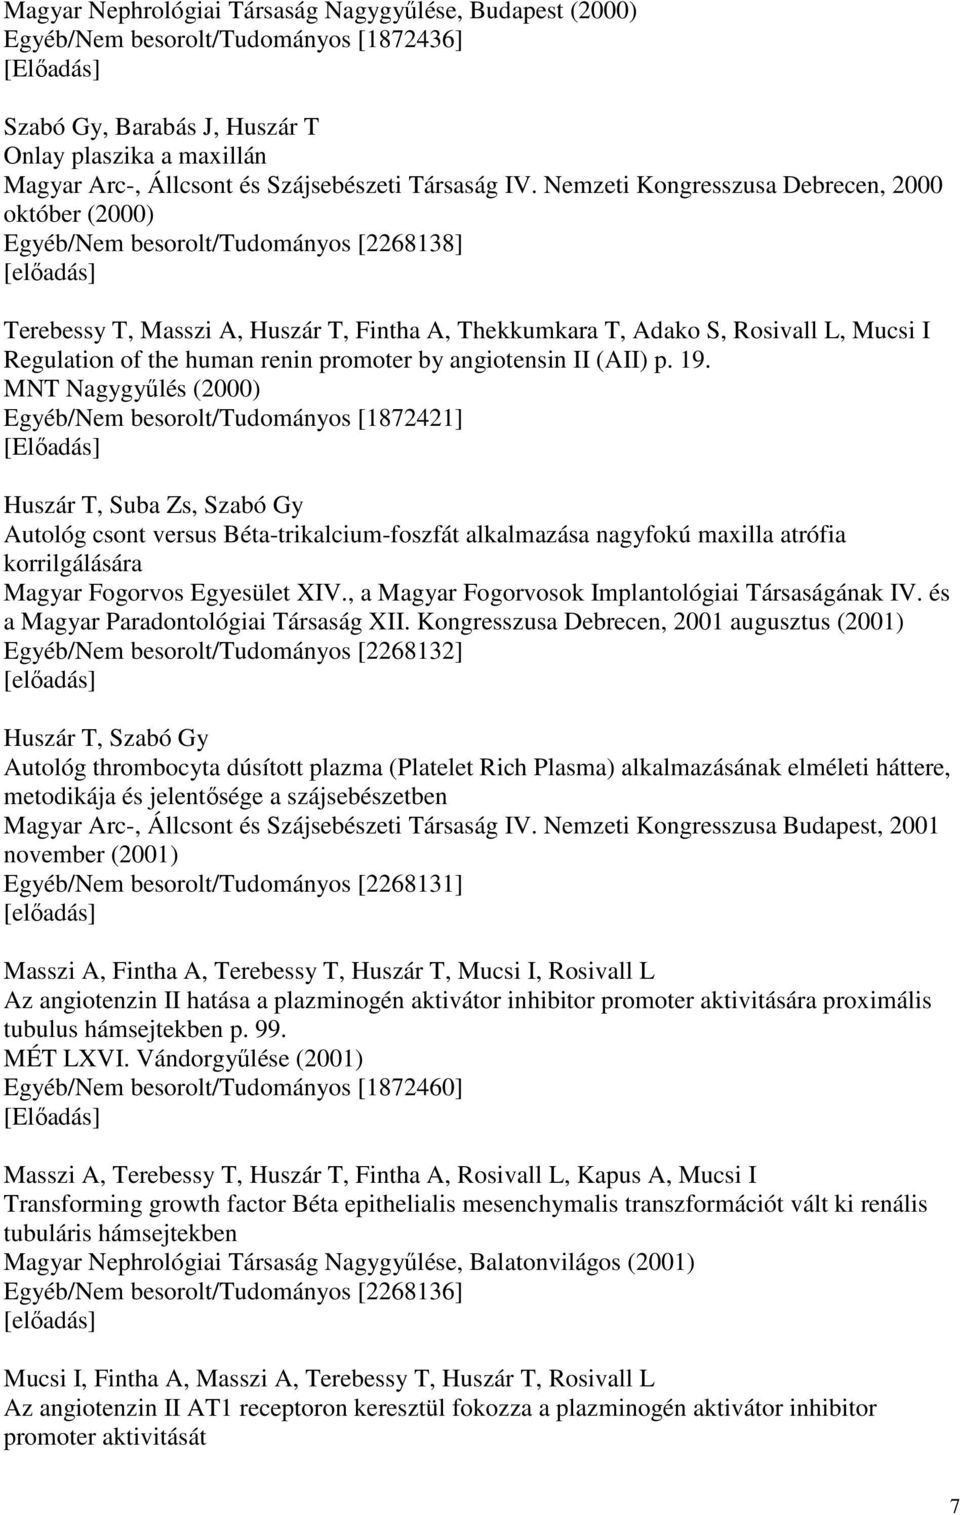 Nemzeti Kongresszusa Debrecen, 2000 október (2000) Egyéb/Nem besorolt/tudományos [2268138] Terebessy T, Masszi A, Huszár T, Fintha A, Thekkumkara T, Adako S, Rosivall L, Mucsi I Regulation of the